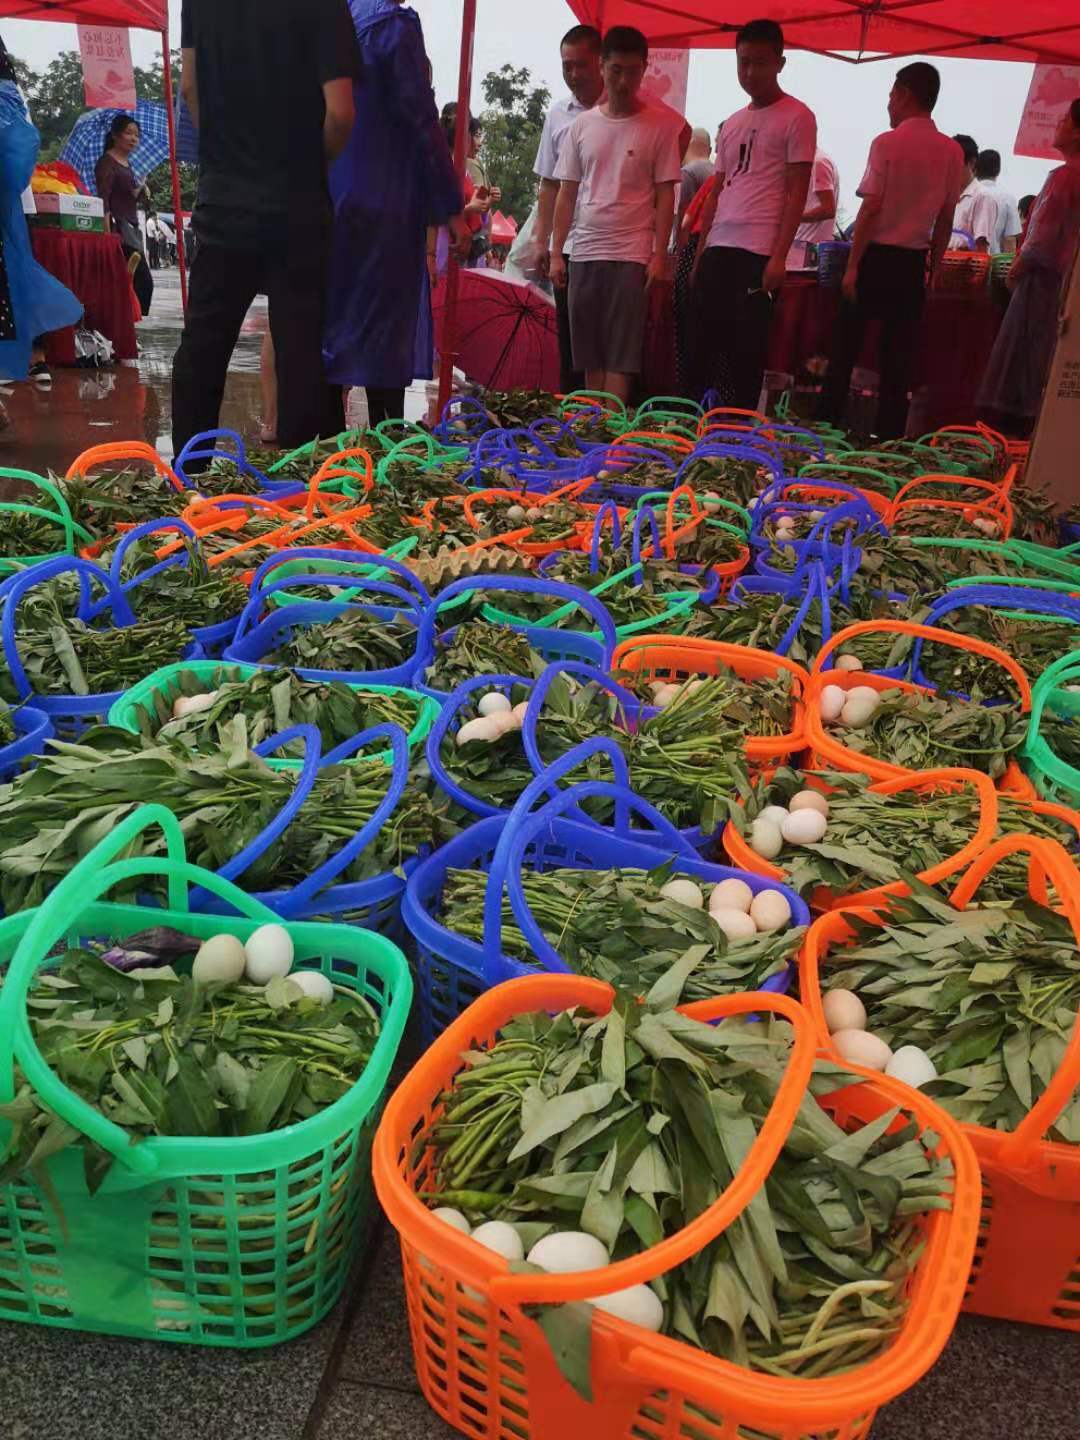 现场义卖的蔬菜瓜果一部分来自爱心农业企业捐赠一部分来自贫困户自己种植。长沙晚报全媒体记者 朱华 摄